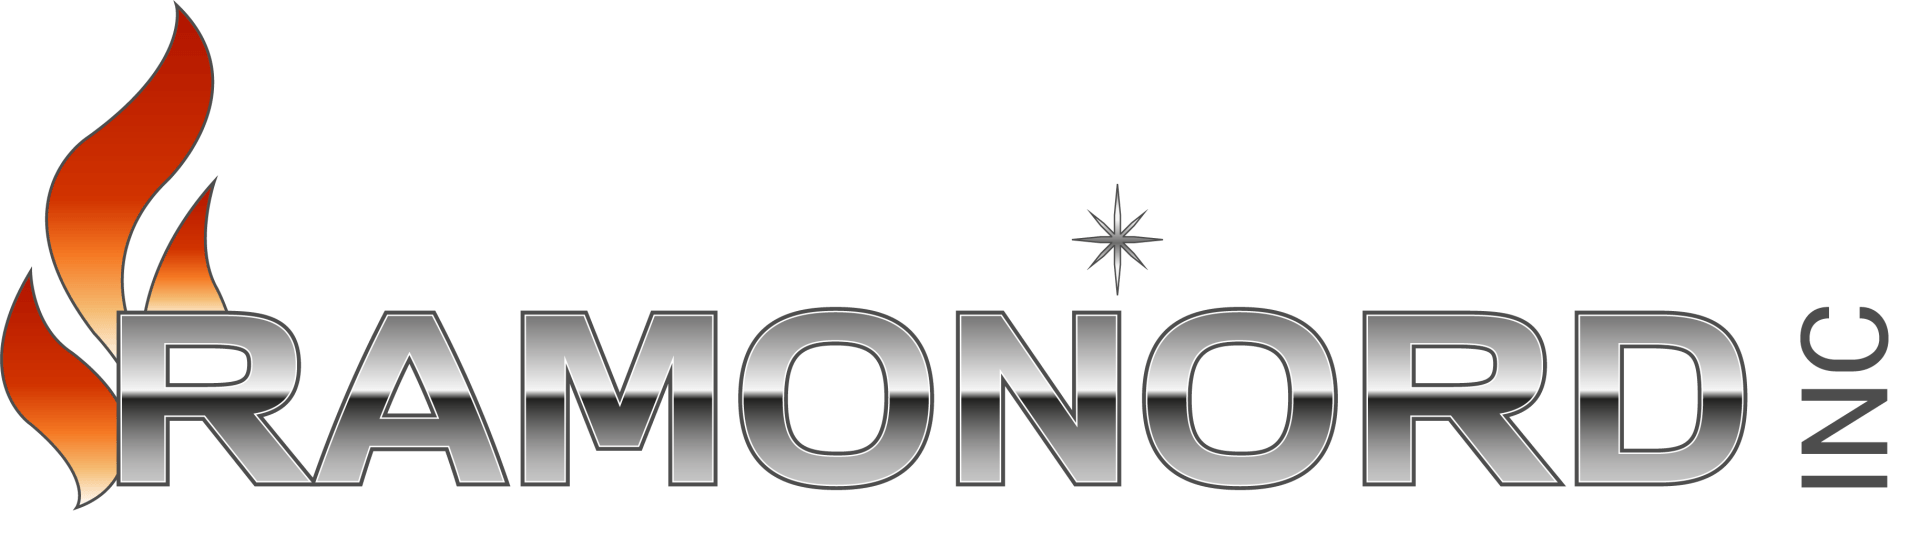 Ramonord Logo